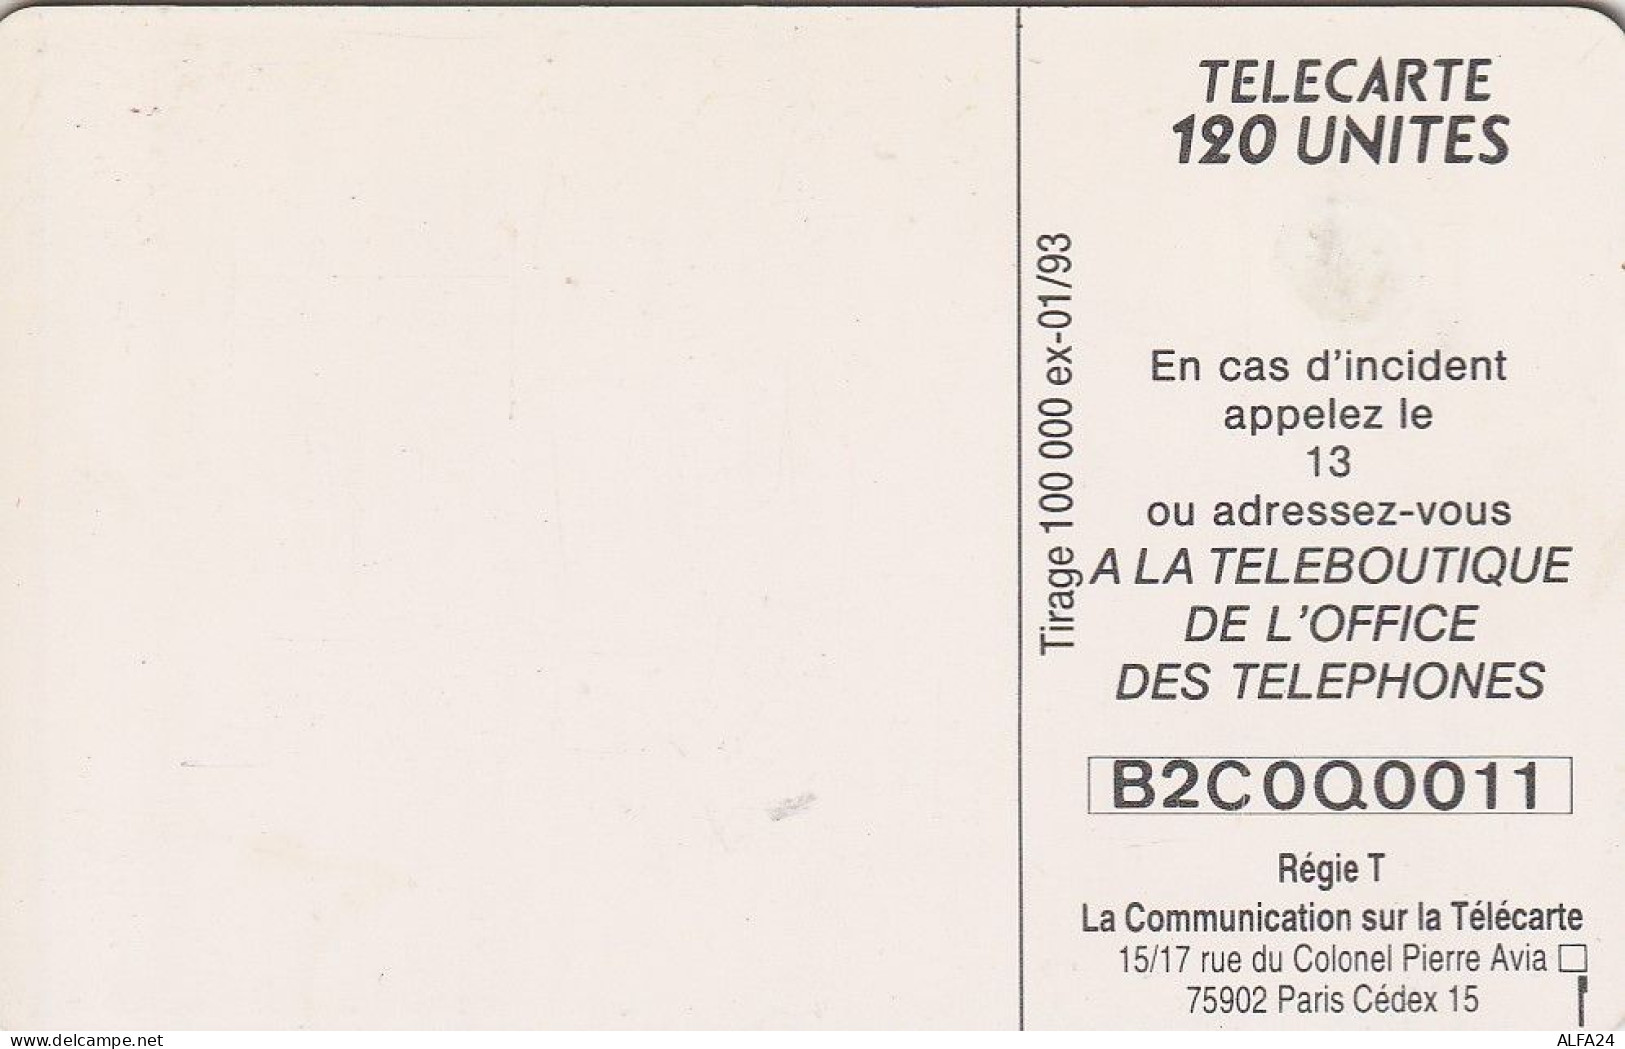 PHONE CARD MONACO  (E35.19.1 - Monace